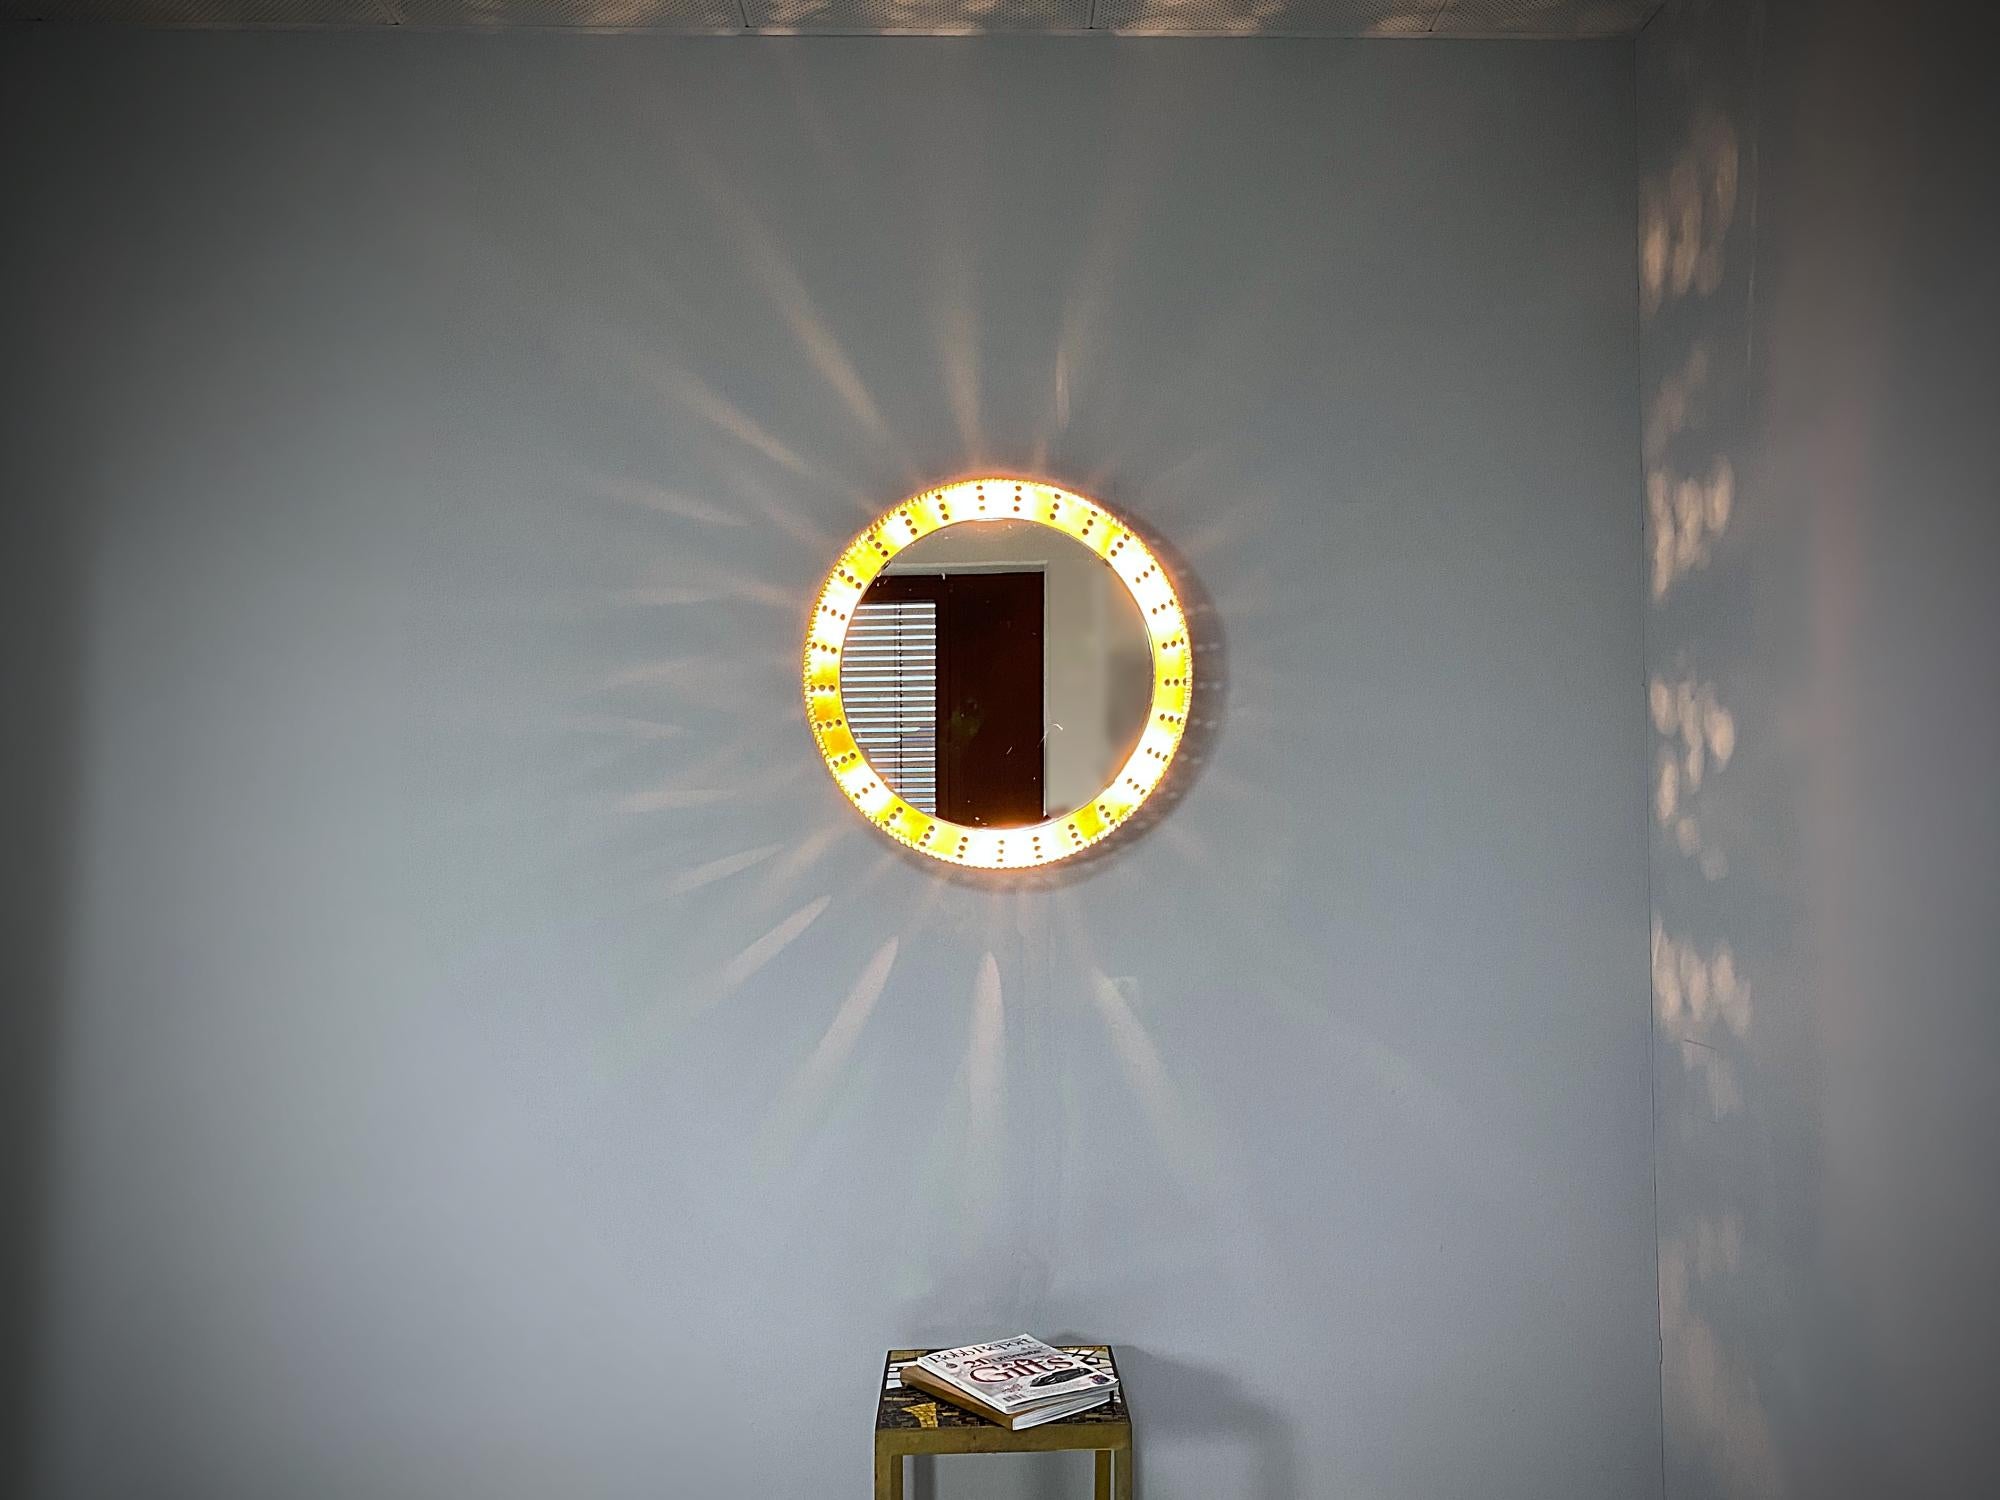 Miroir lumineux rond sculpté à la main avec cadre en métal laqué or, fabriqué dans les années 1960, France. Cadre massif avec bords festonnés décoratifs. Le miroir est en bon état avec quelques angles morts. Six douilles standard Edison E14.
Nous